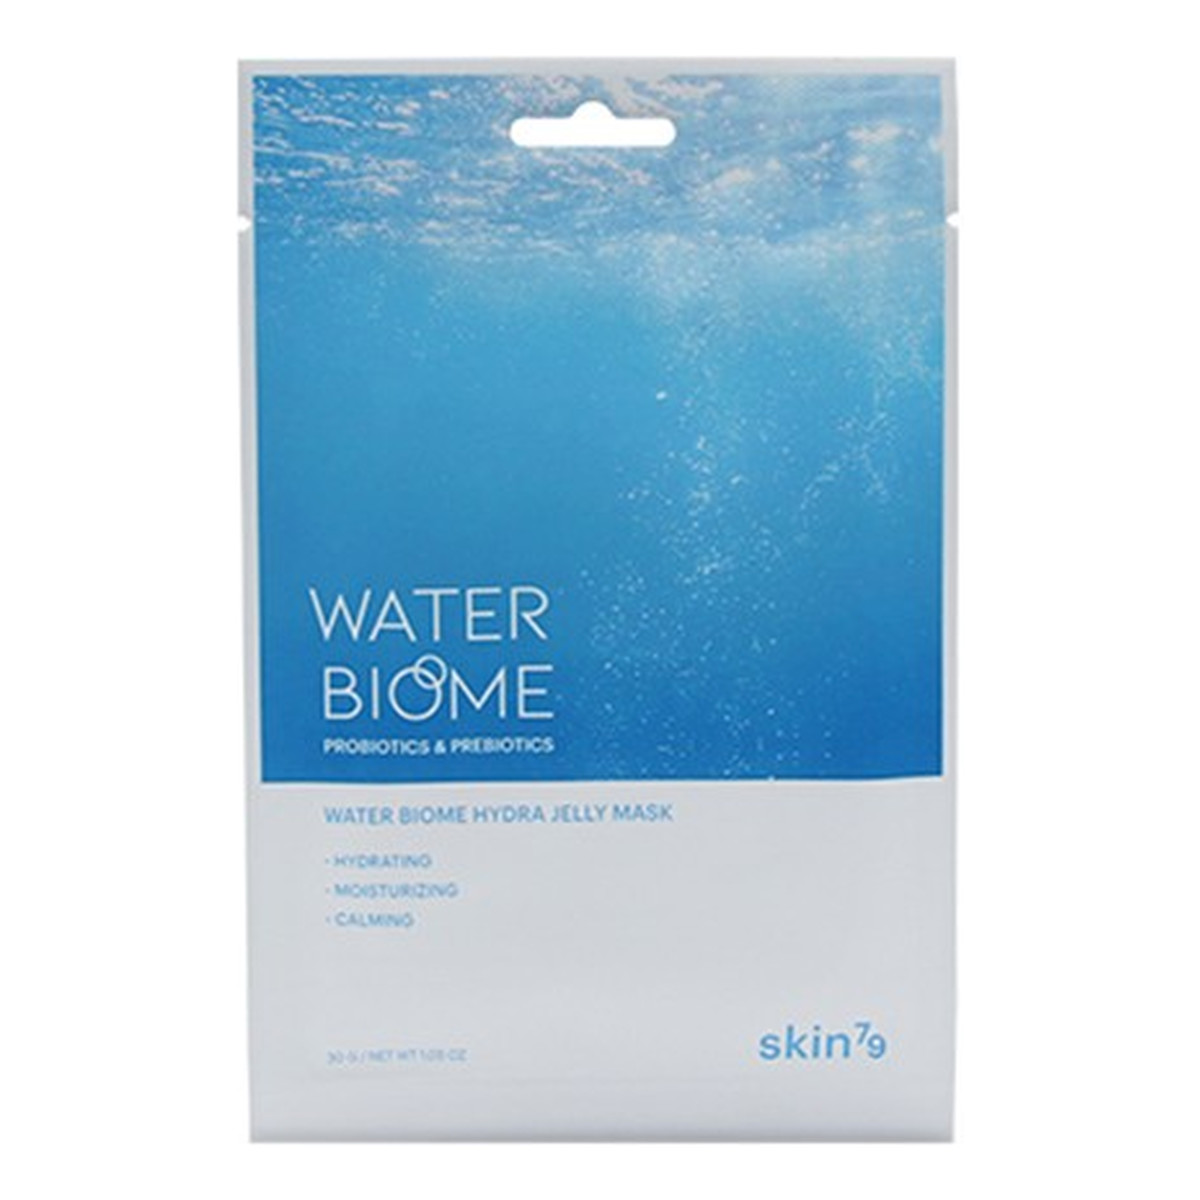 Skin79 Water Biome Hydra Jelly Mask maseczka w płacie z probiotykami i prebiotykami 30g